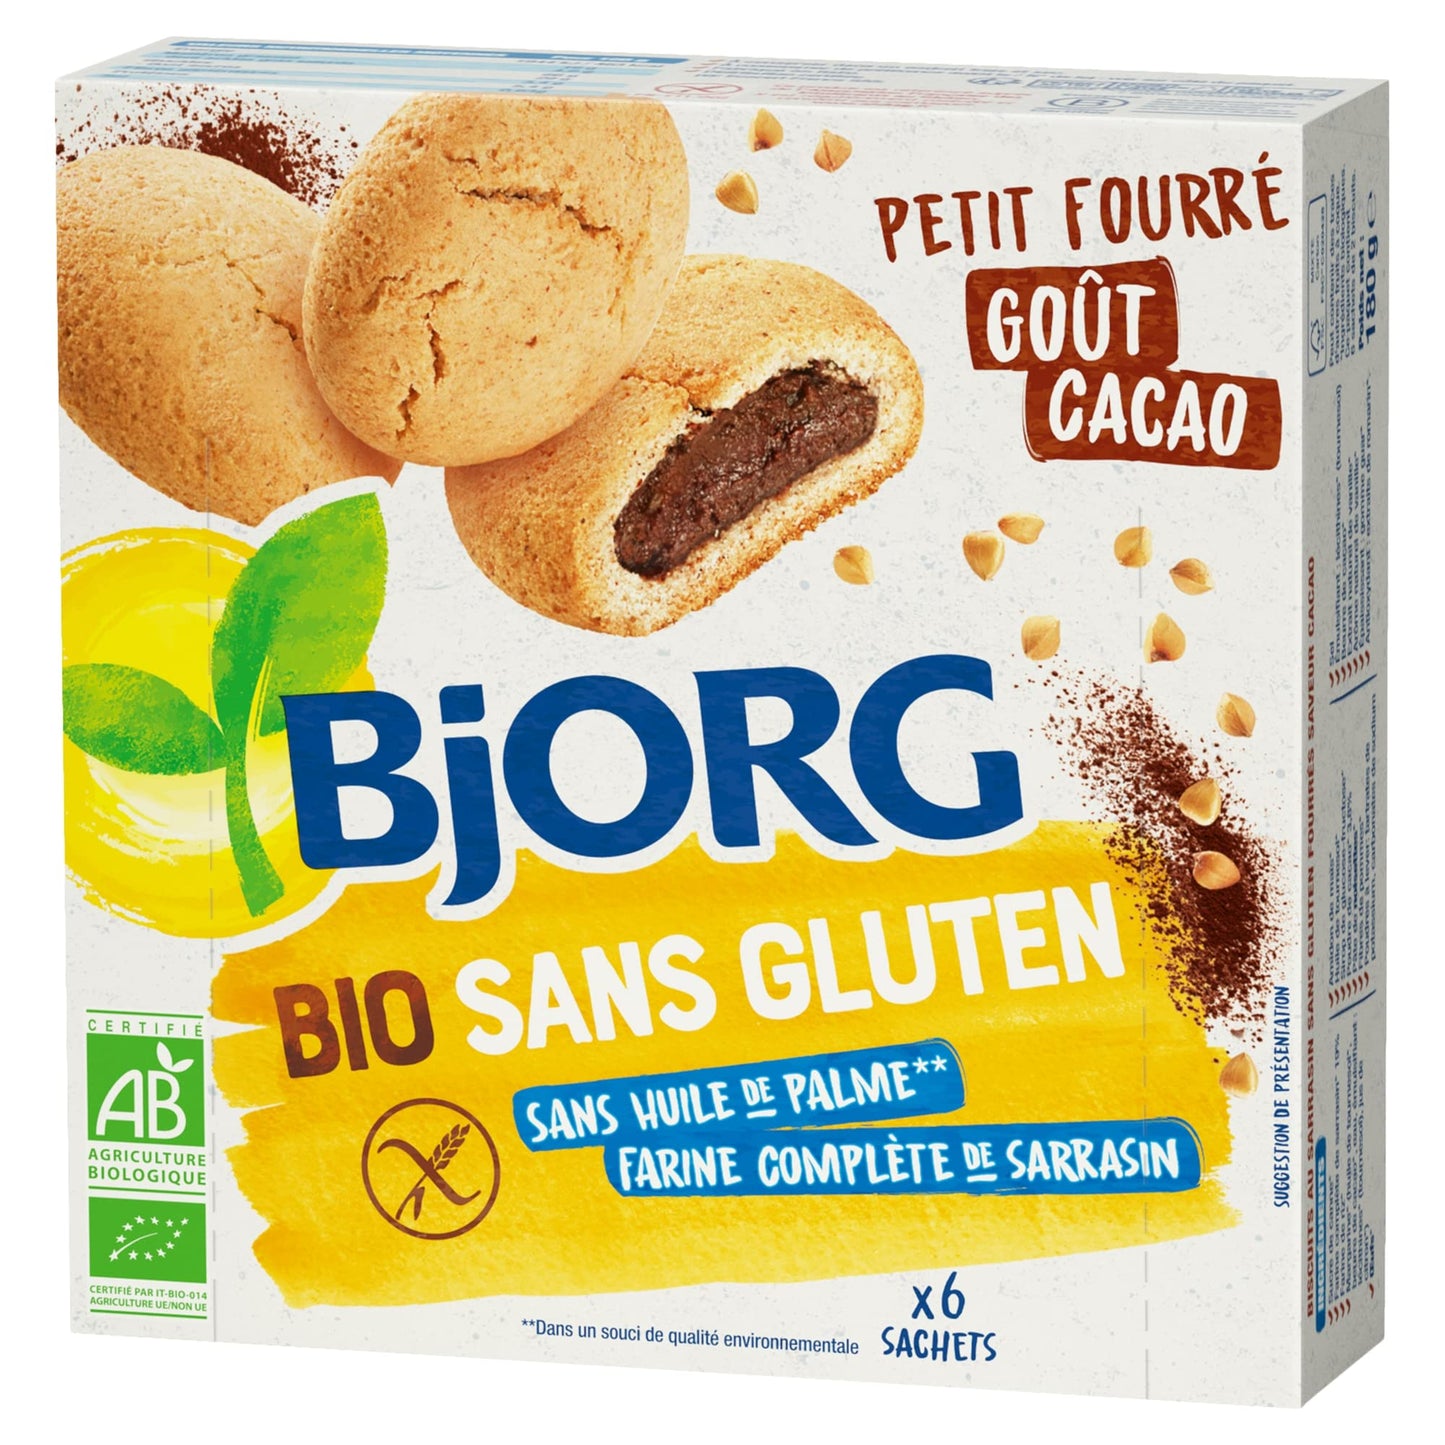 BJORG - Biscuits Petit Fourrés Goût Cacao - Bio et Sans Gluten - Farine Complète de Sarrasin - Sans Huile de Palme - Paquet de 180 g